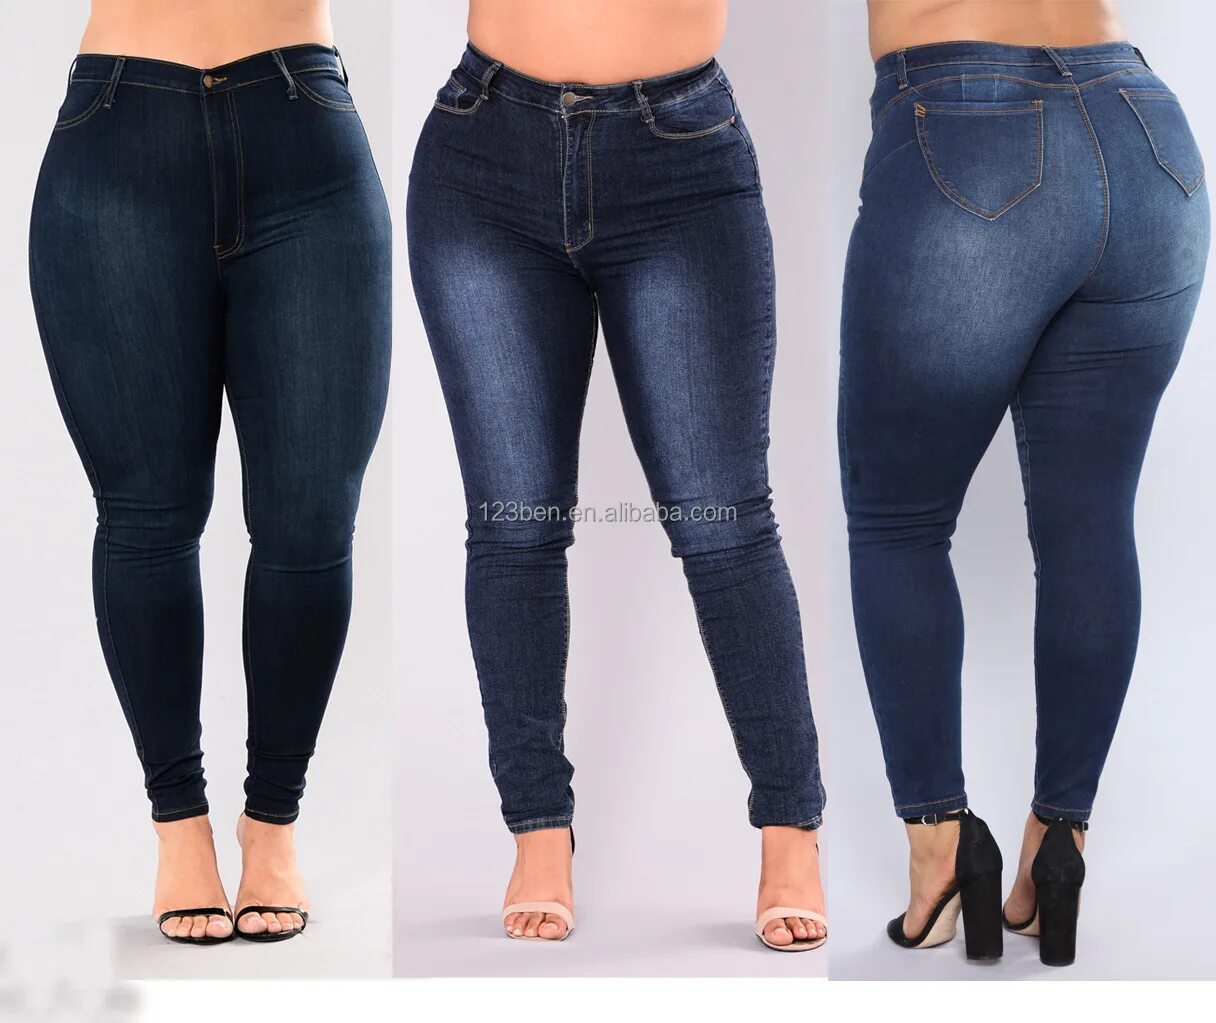 Джинсы больших размеров для женщин. Джинсы женские большого размера. Джинсы легинсы. Крупные женщины в джинсах.